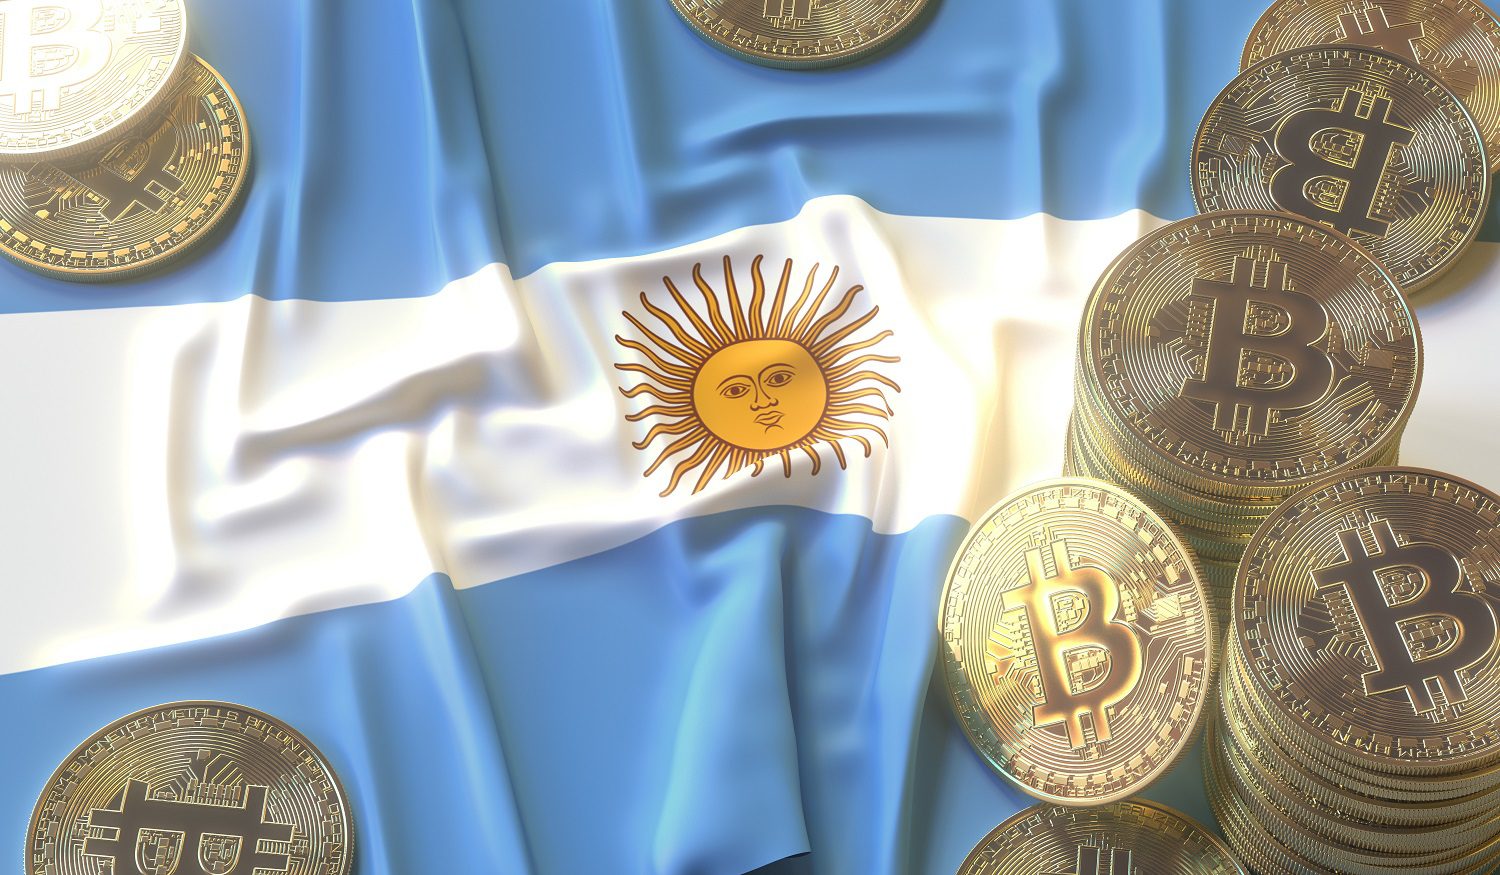 Fichas de metal destinadas a representar Bitcoin en la bandera nacional de Argentina.